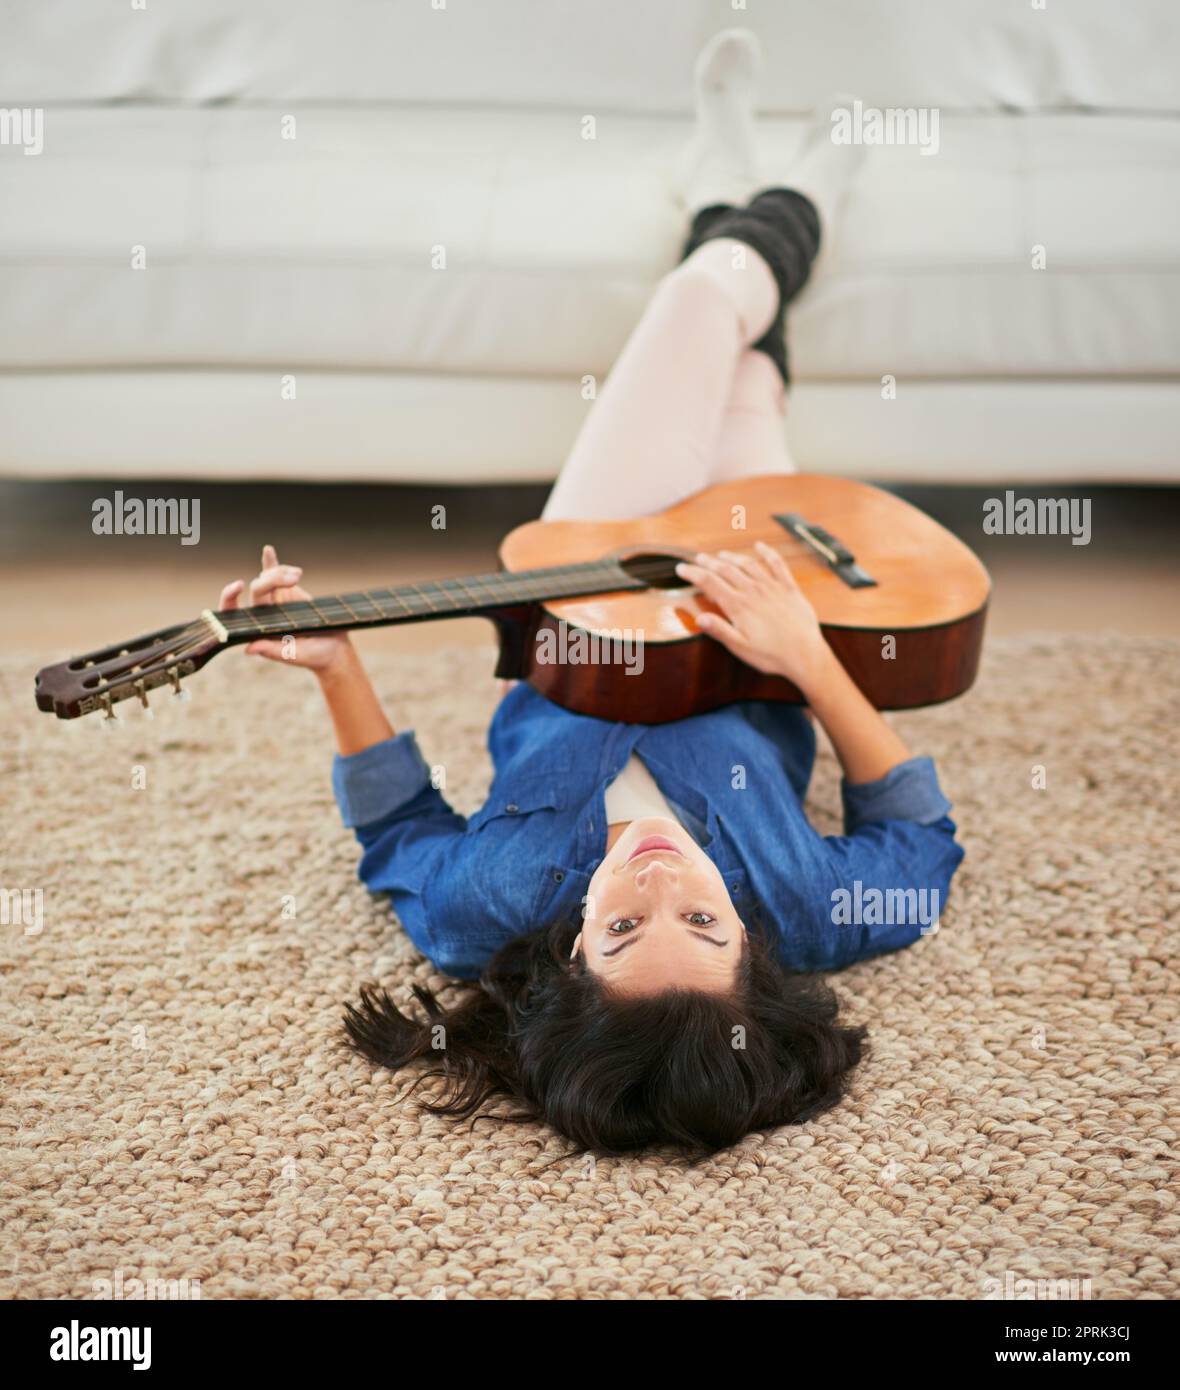 Musik ist das Essen von life...play On. Eine junge Frau spielt Gitarre, während sie auf ihrem Wohnzimmerboden liegt. Stockfoto